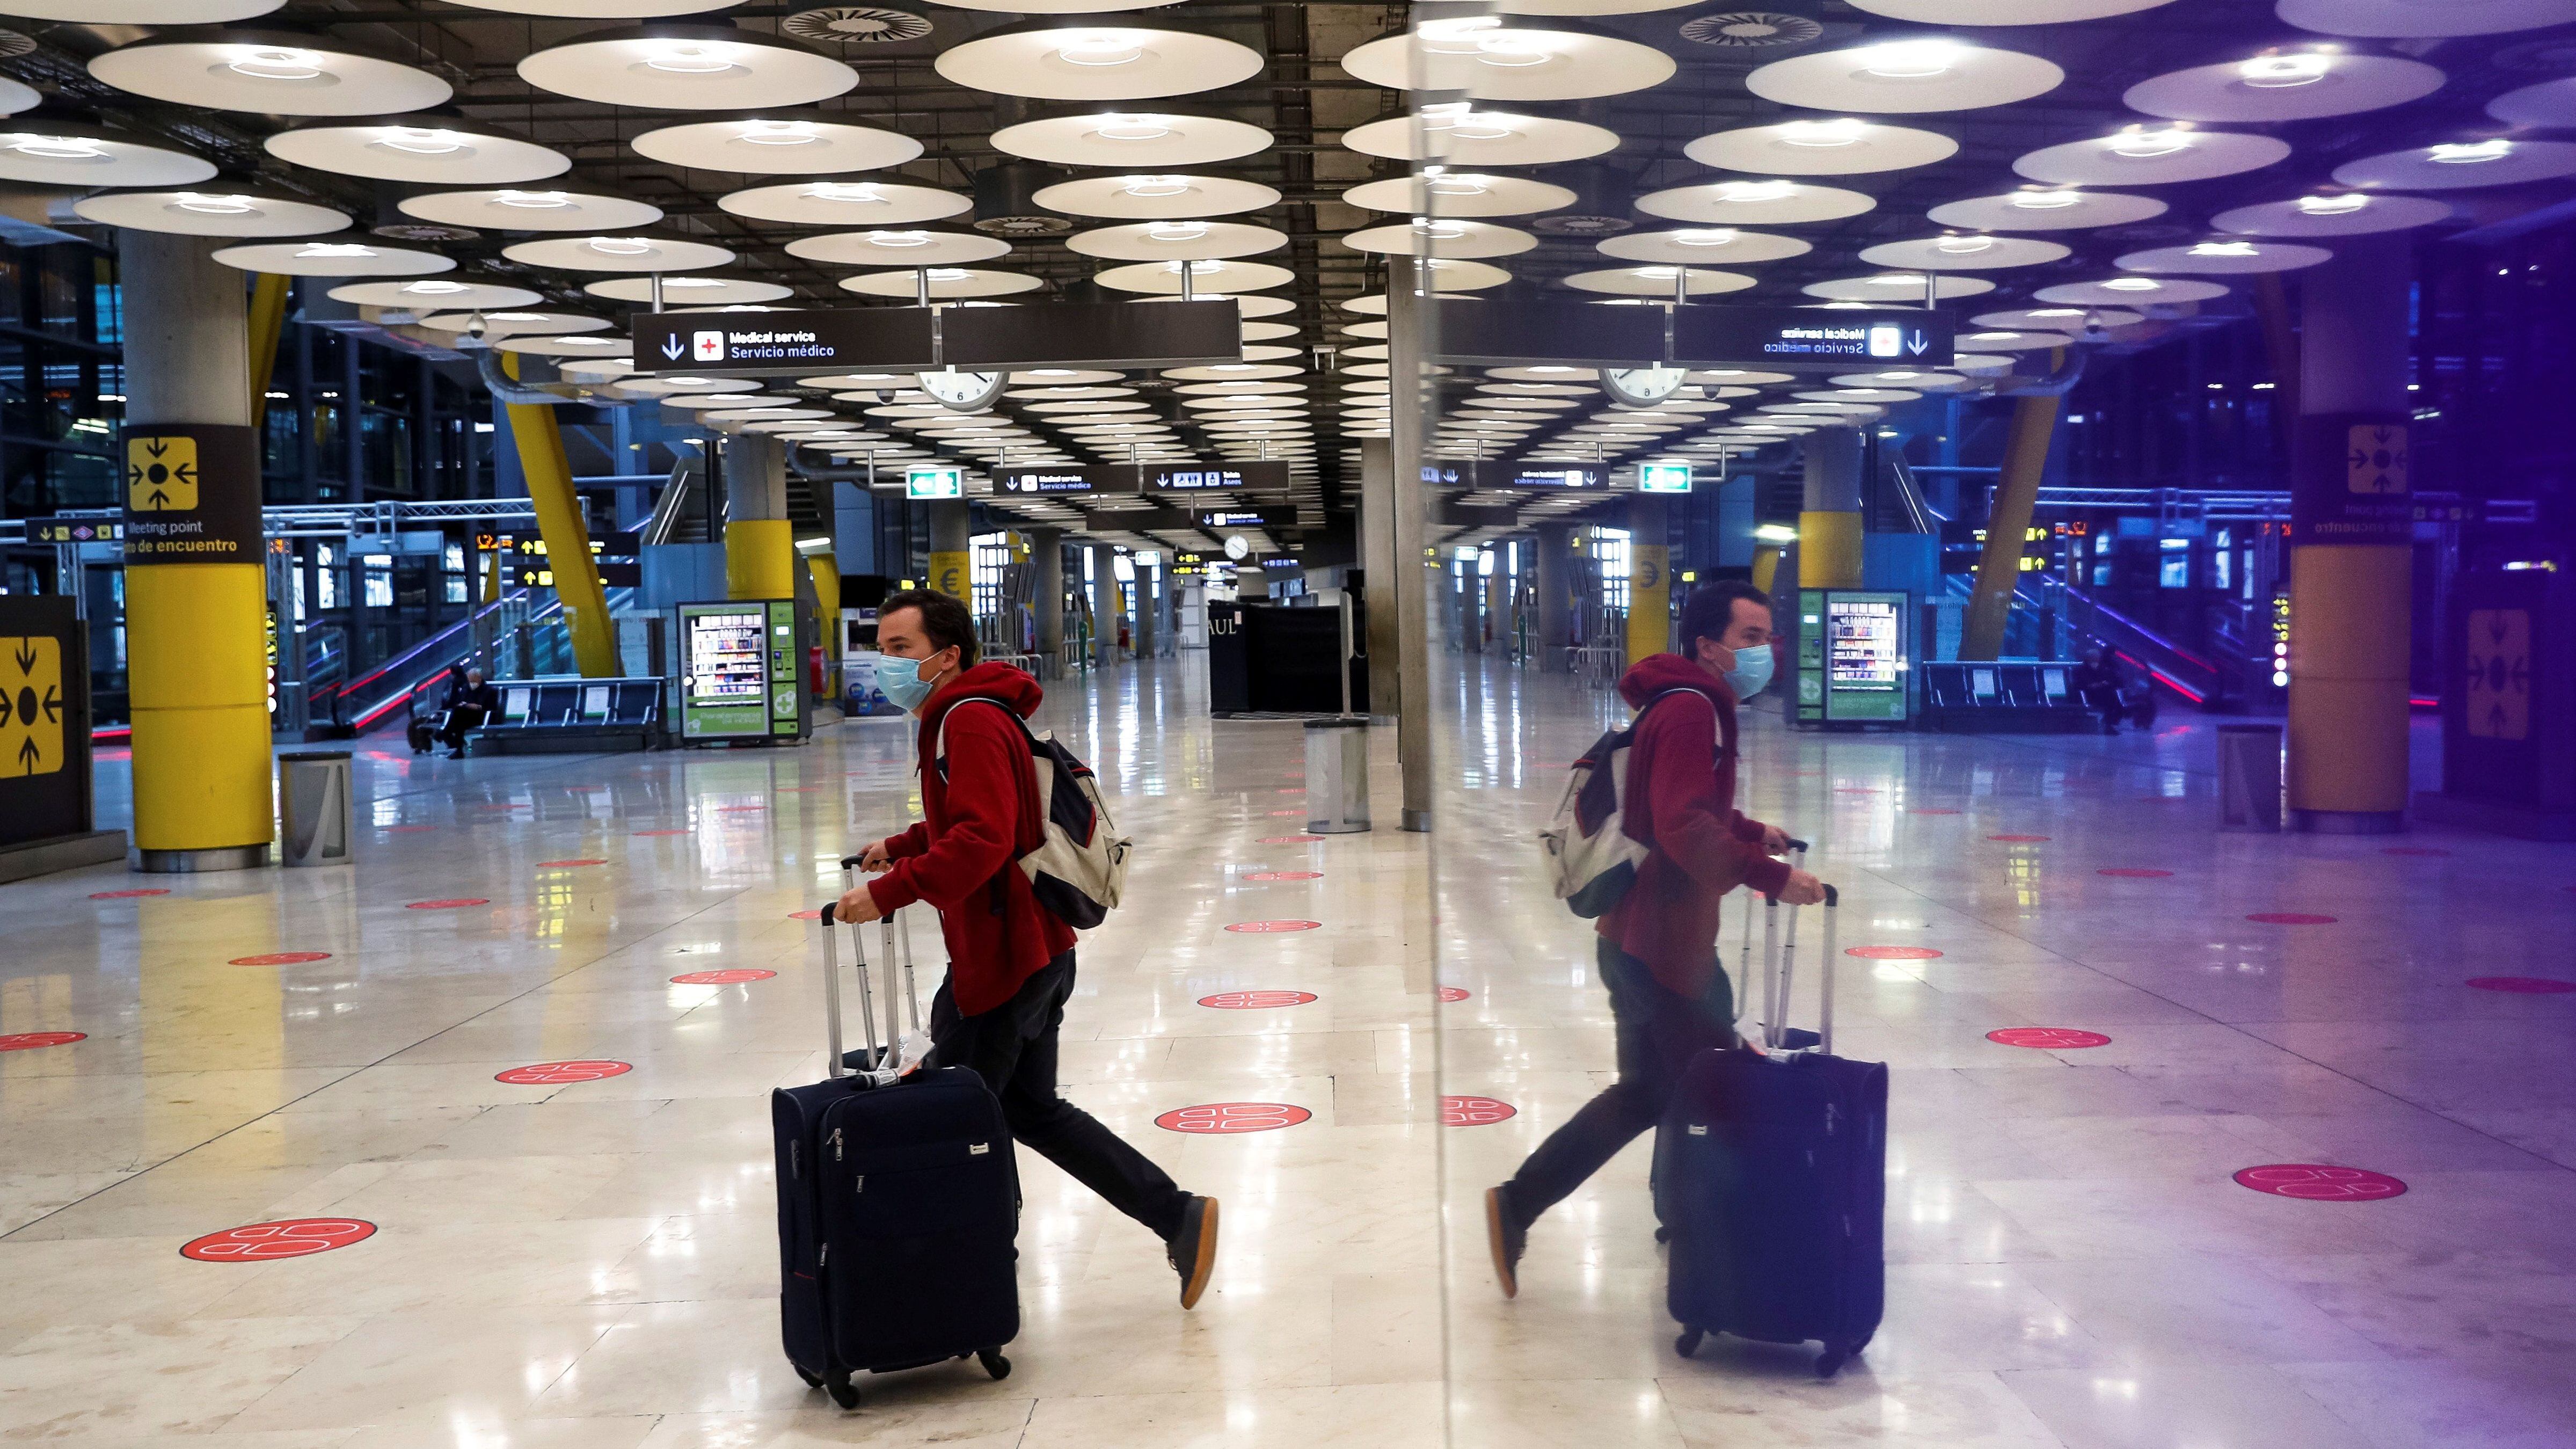 UM passageiro cruza um dos salões do aeroporto Adolfo Suárez Madrid-Barajas em 3 de fevereiro.